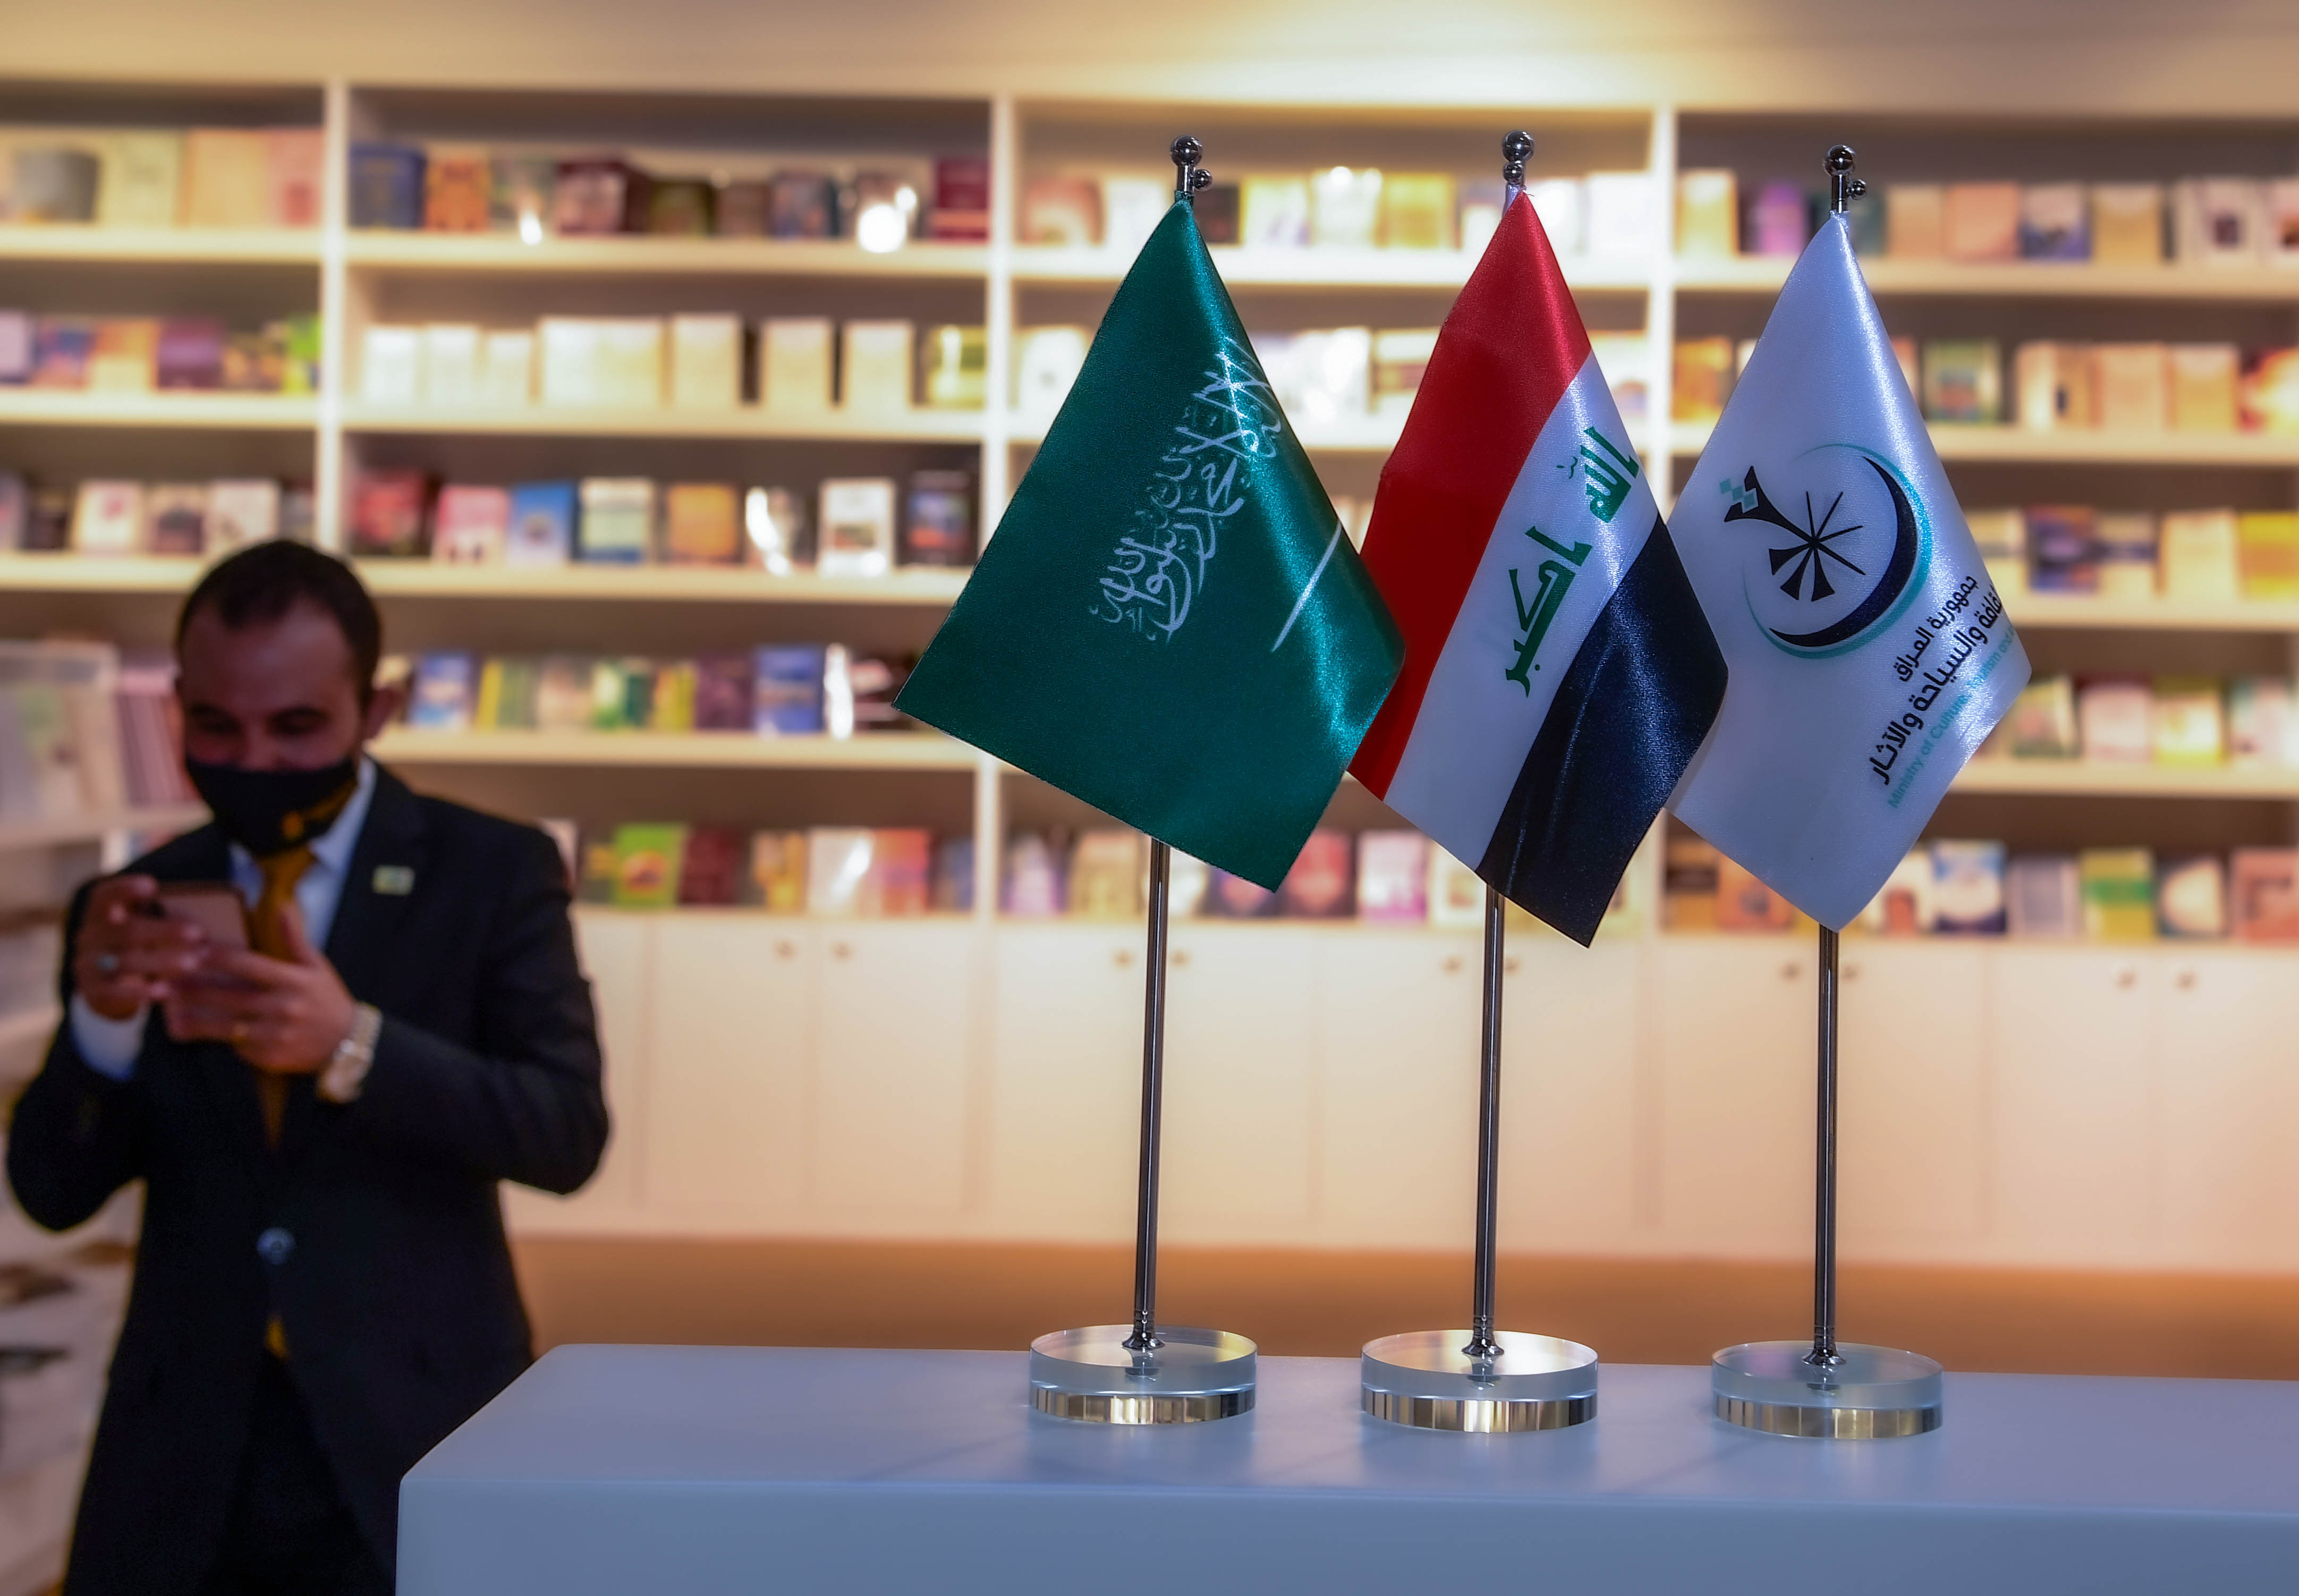 يشارك العراق في المعرض كضيف شرف النسخة الحالية (اندبندنت عربية - بشير صالح)